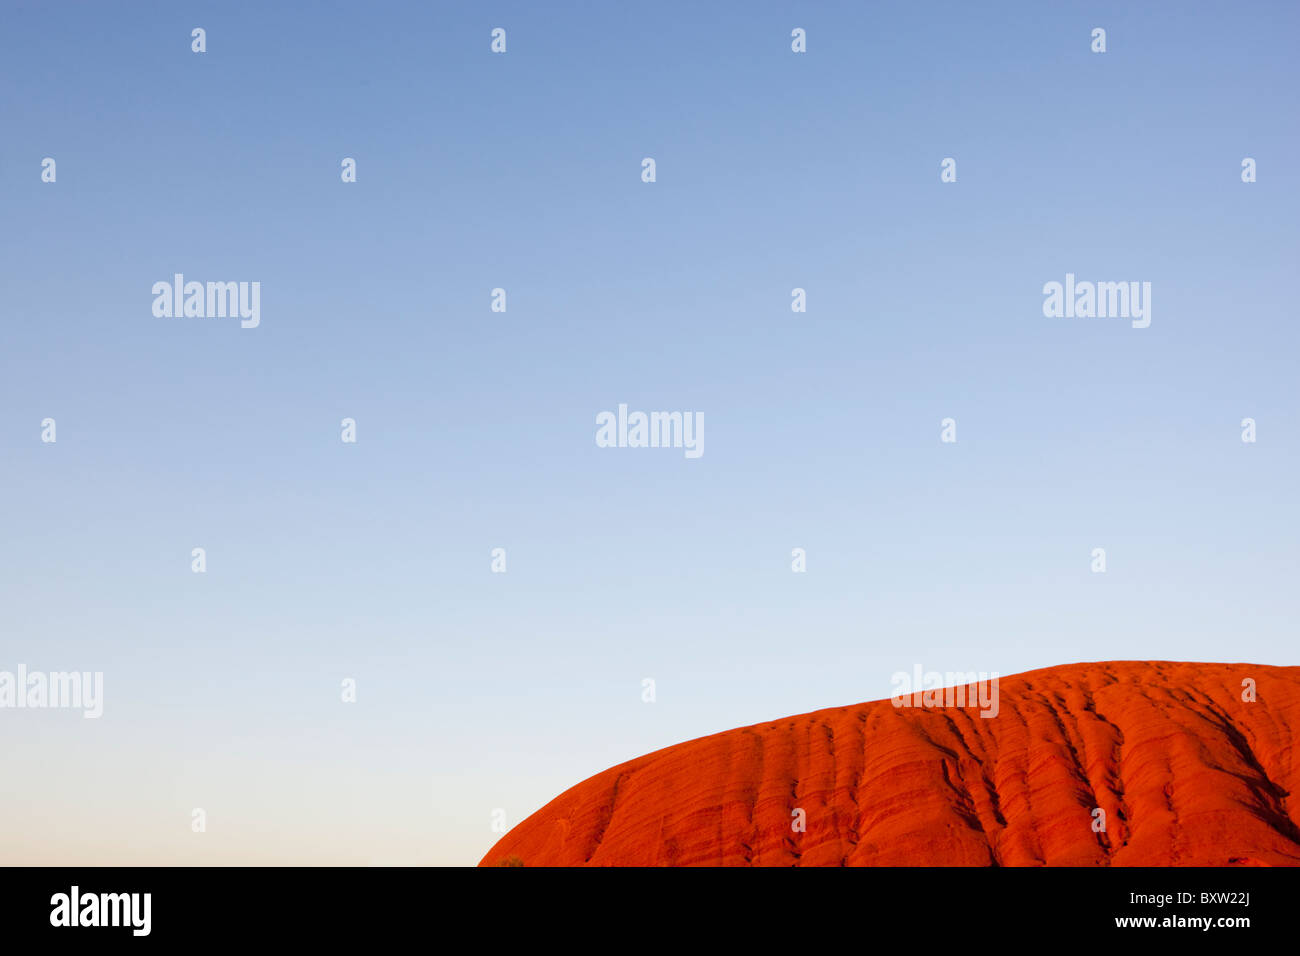 Australien, Northern Territory, Uluru - Kata Tjuta National Park, steigende Sonne leuchten Ayers Rock mit orange Leuchten am Sommermorgen Stockfoto